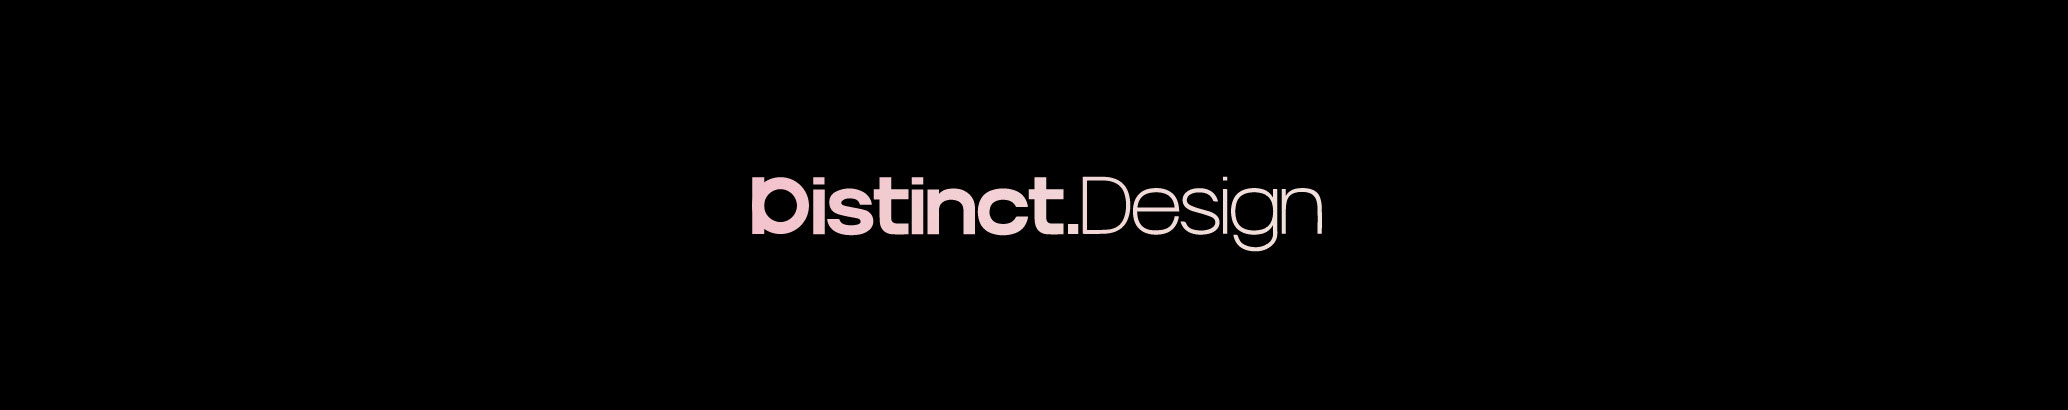 Distinct Design Studio's profile banner